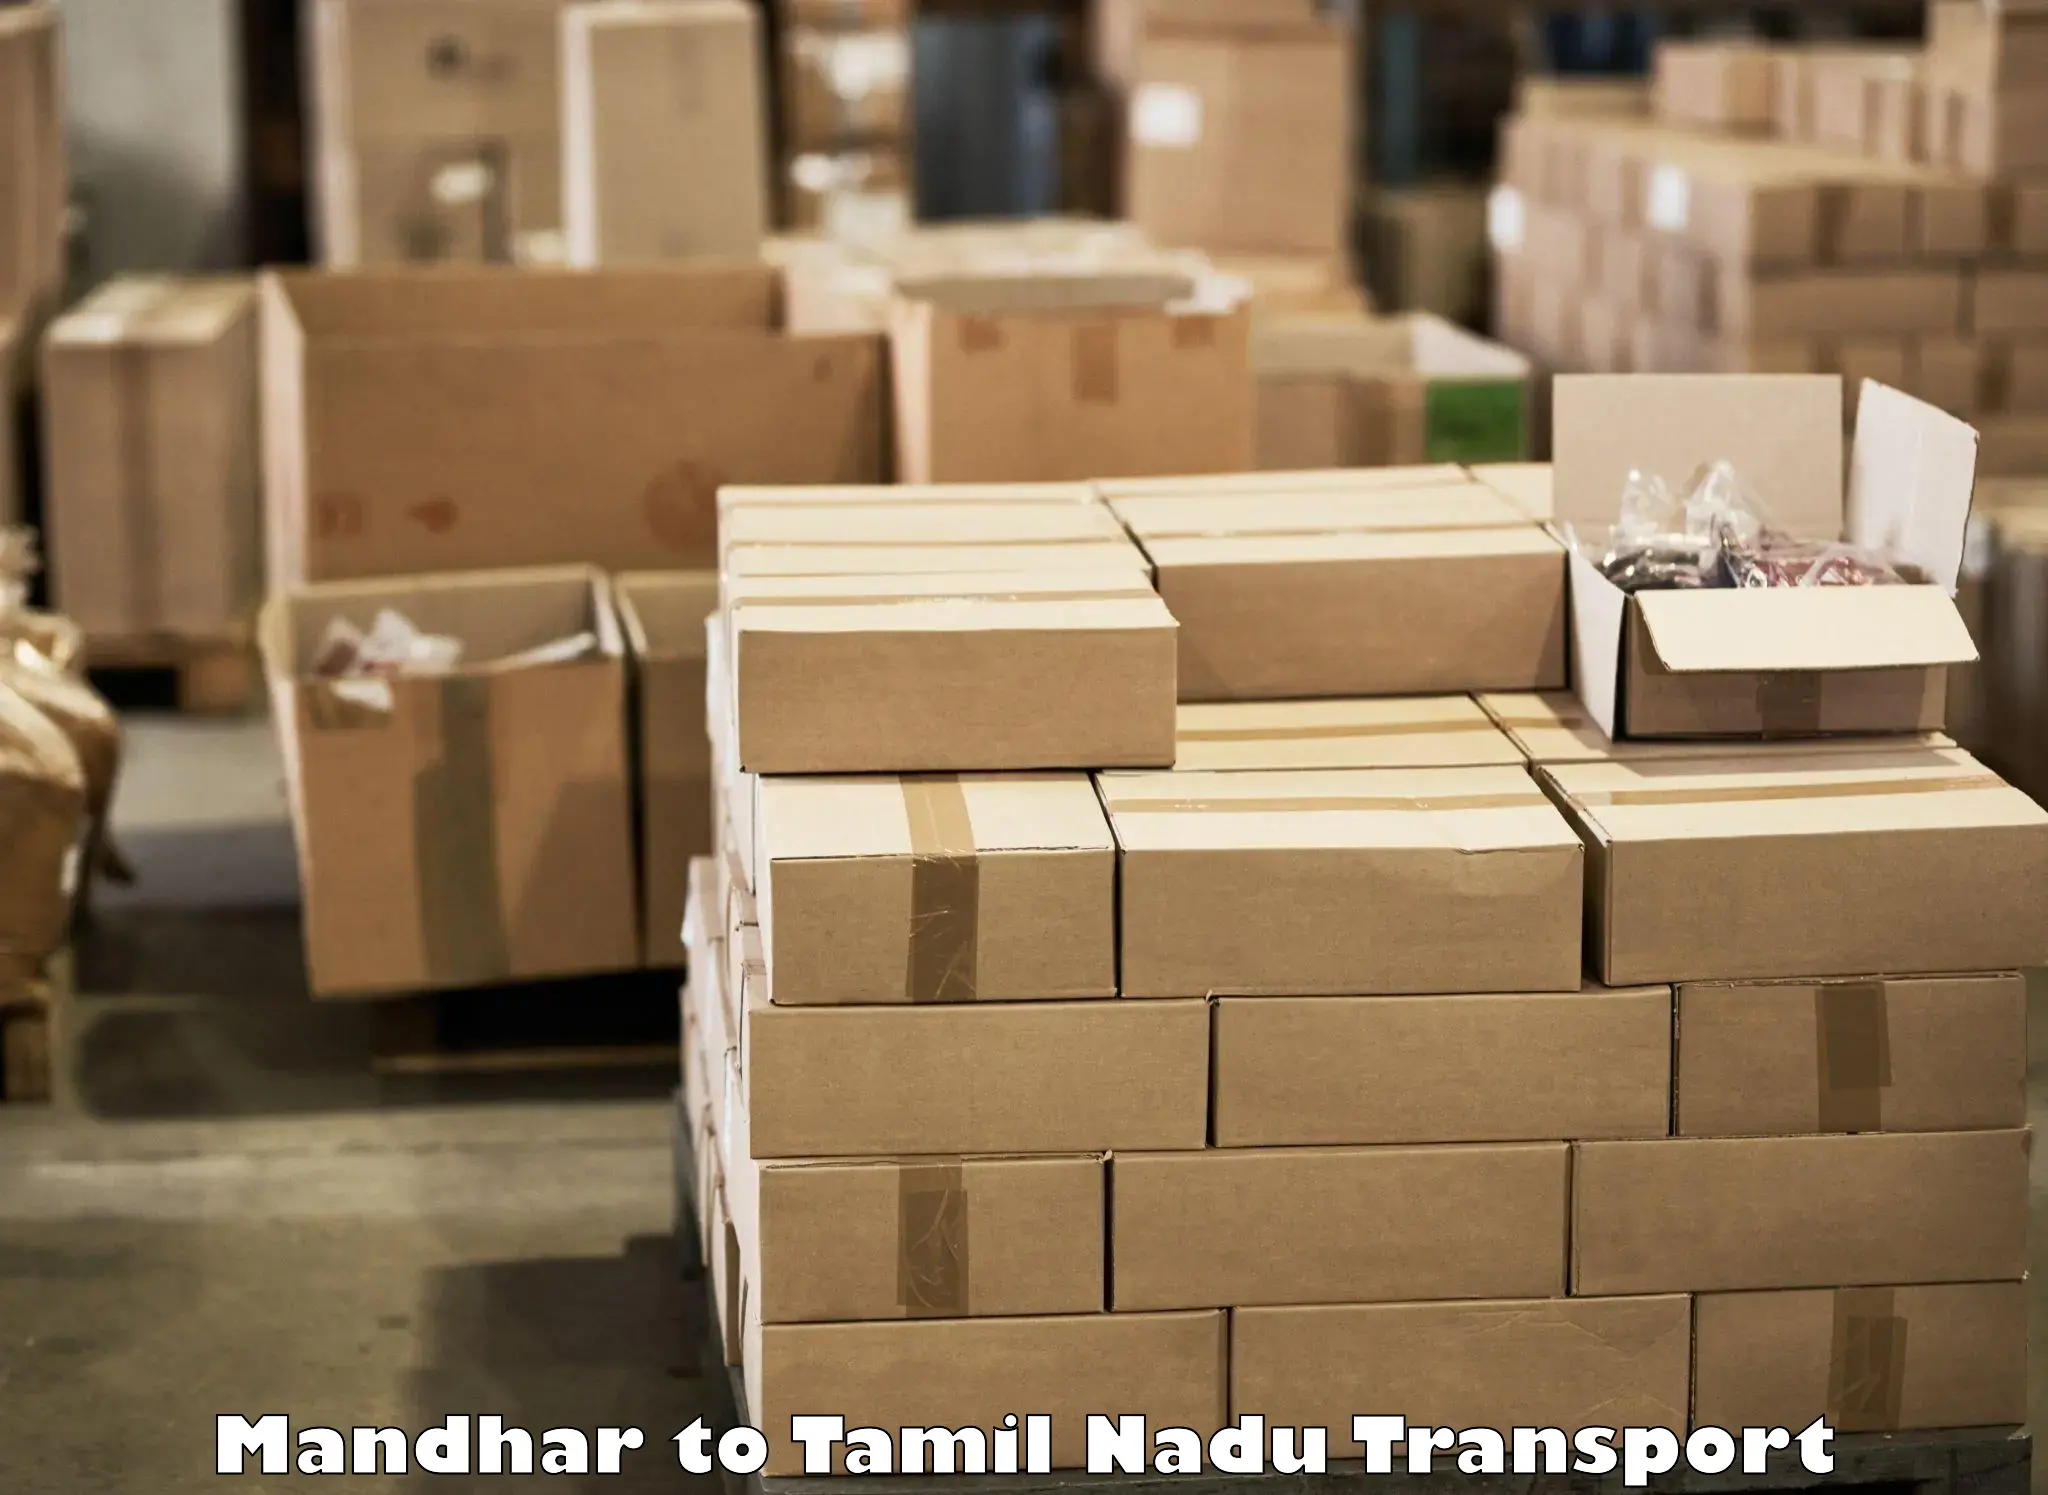 Online transport Mandhar to Nandambakkam